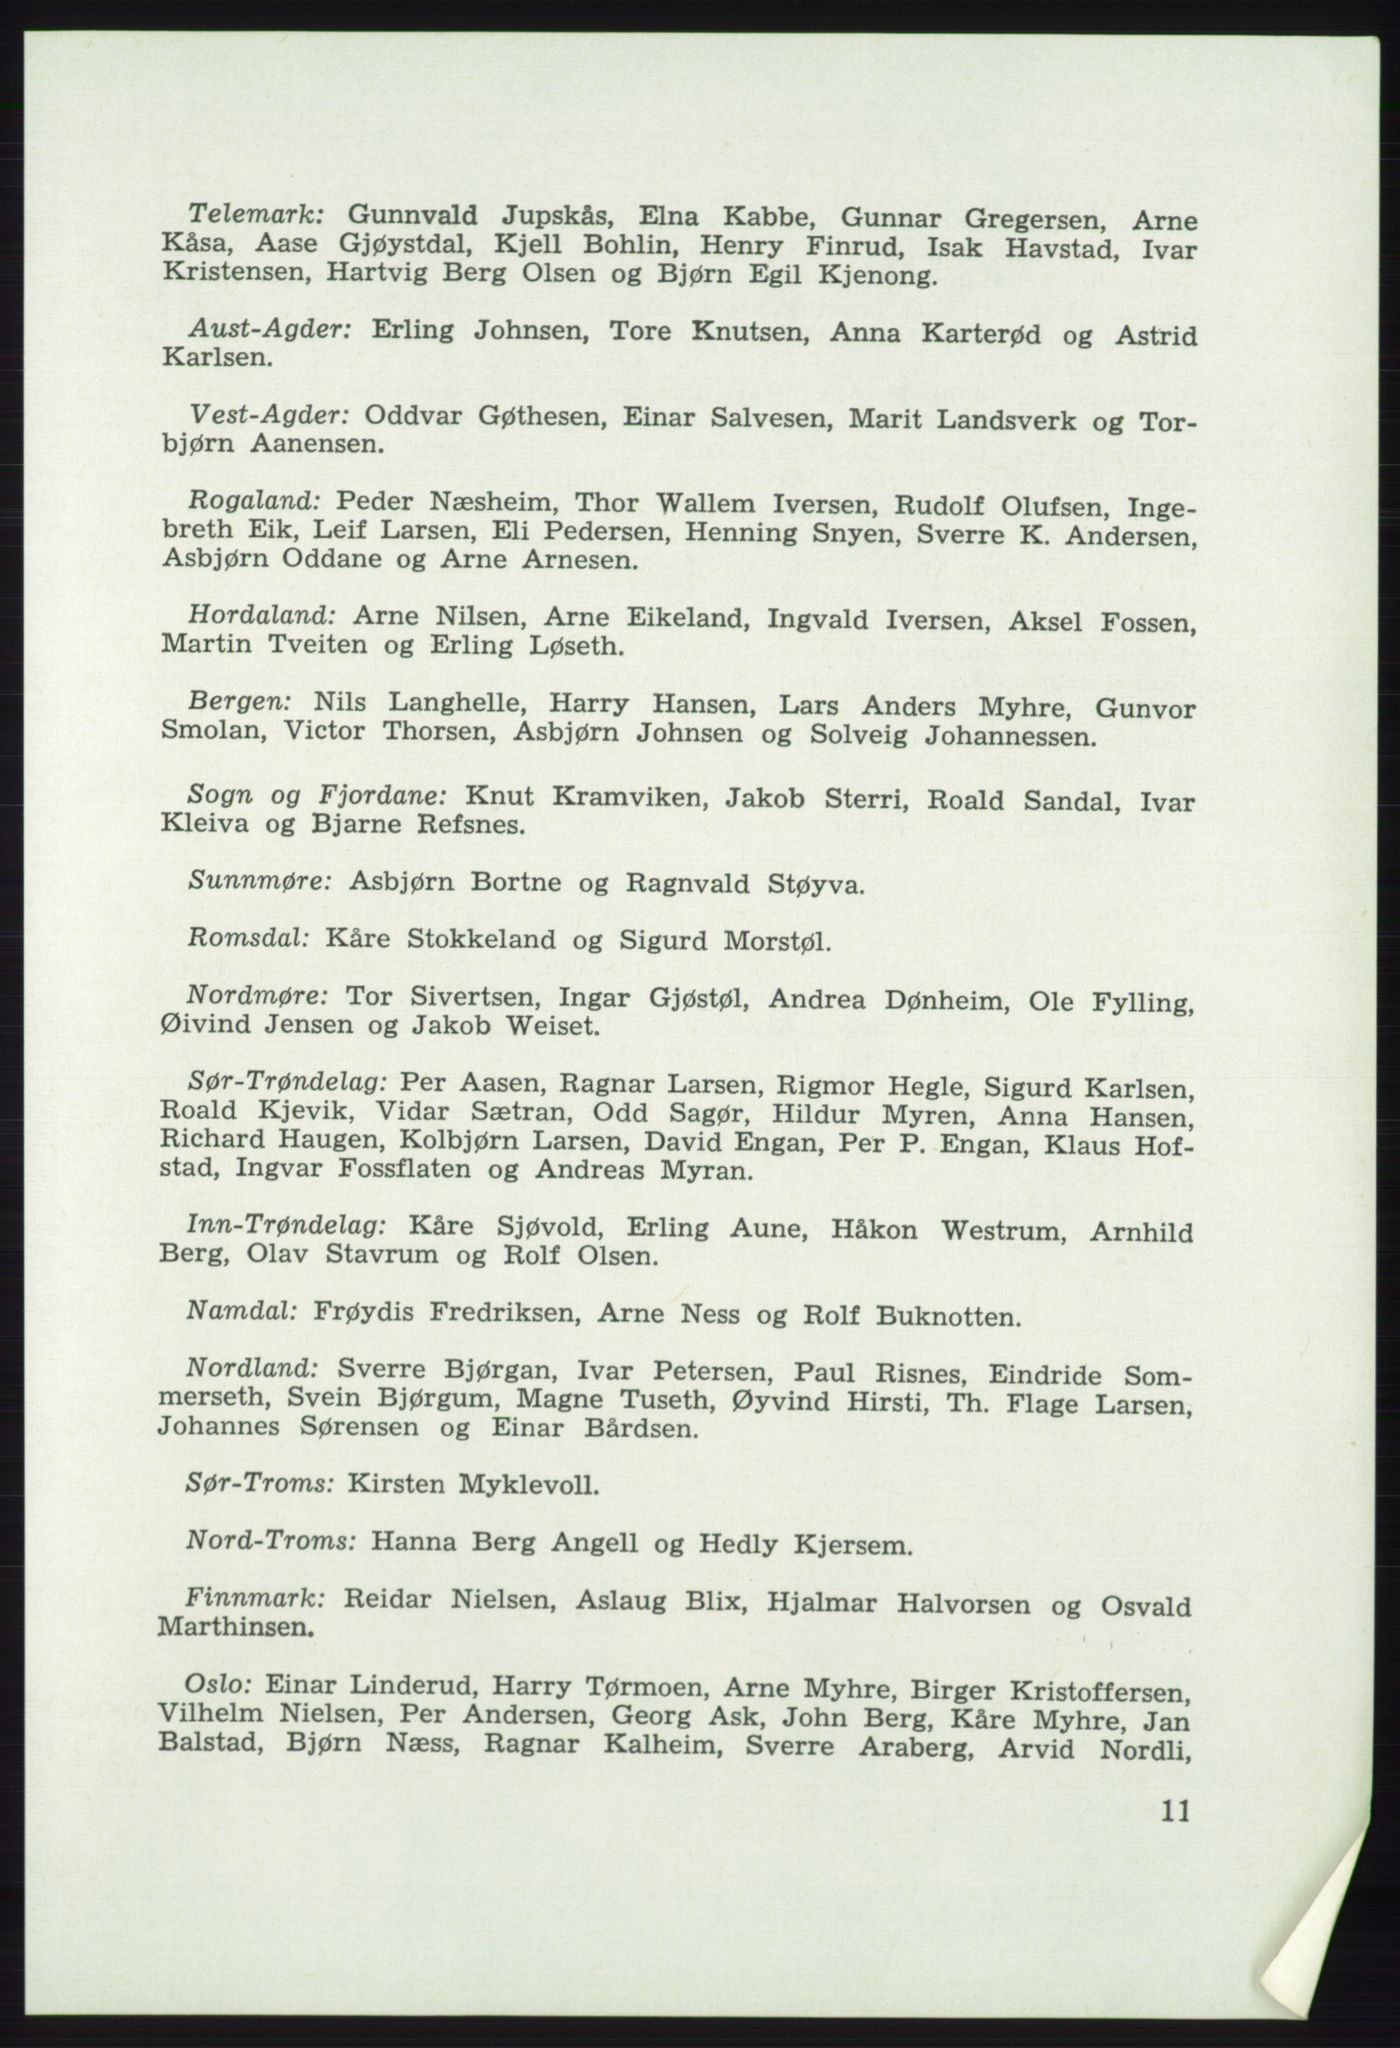 Det norske Arbeiderparti - publikasjoner, AAB/-/-/-: Protokoll over forhandlingene på det 41. ordinære landsmøte 21.-23. mai 1967 i Oslo, 1967, s. 11